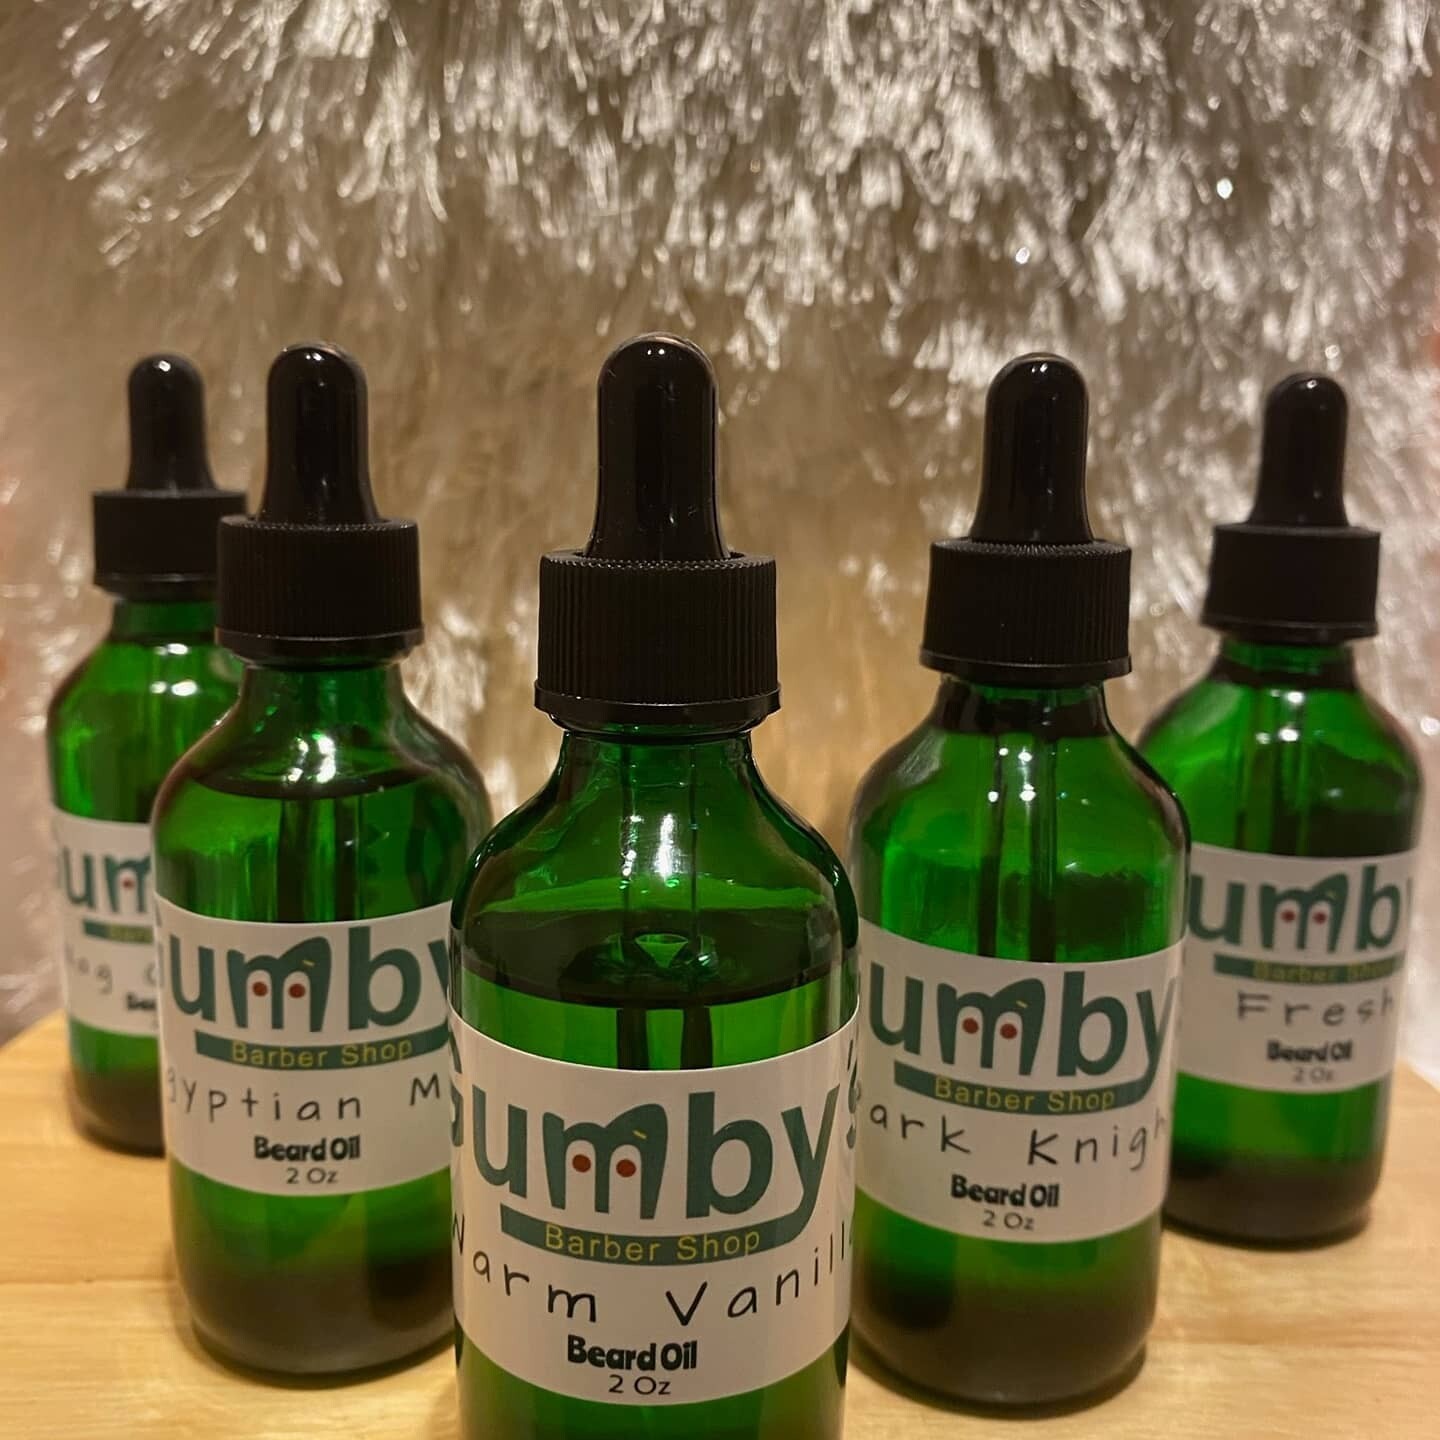 Gumby's Beard Oil